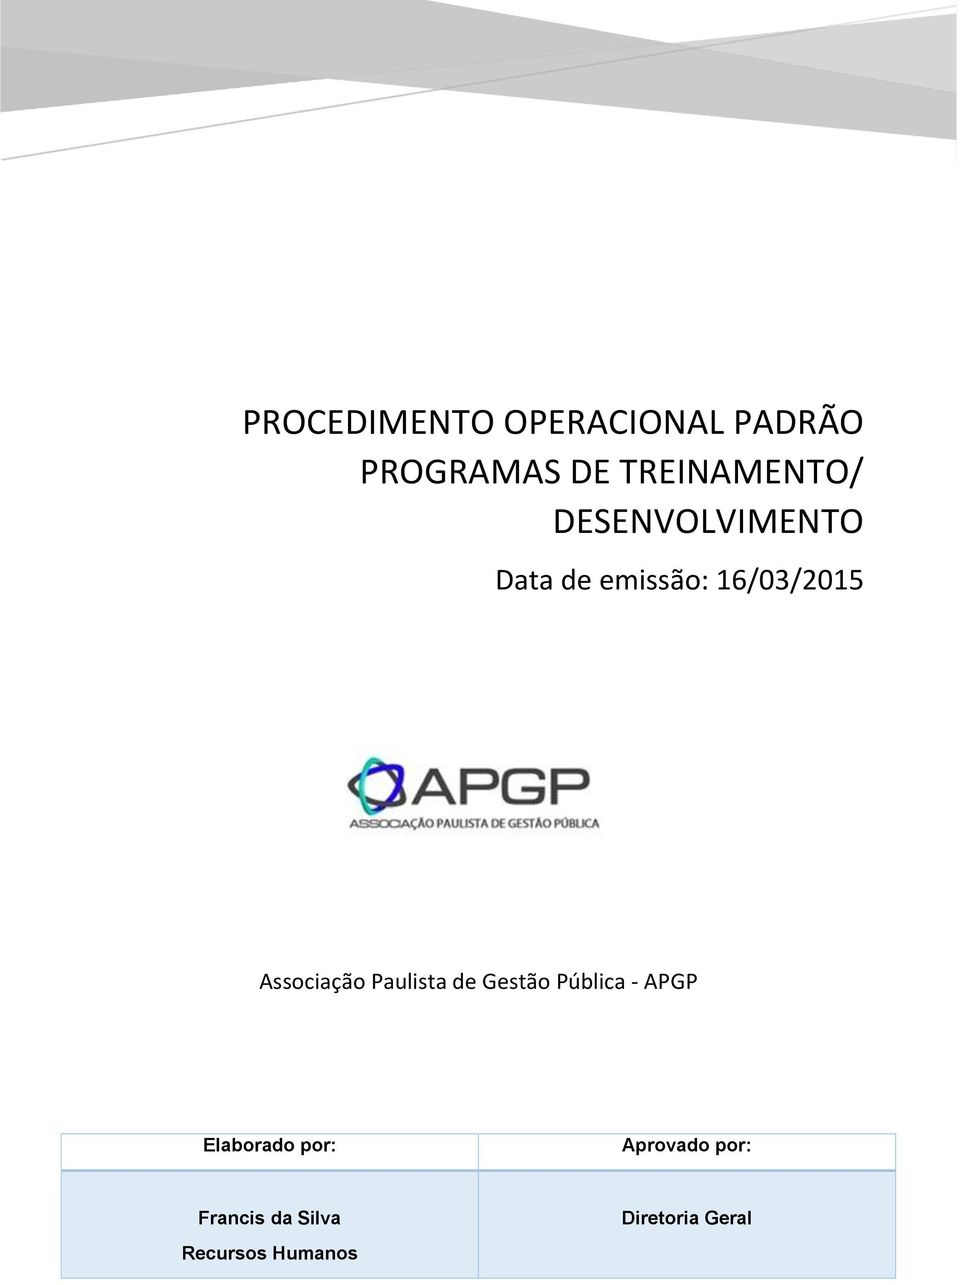 Associação Paulista de Gestão Pública - APGP